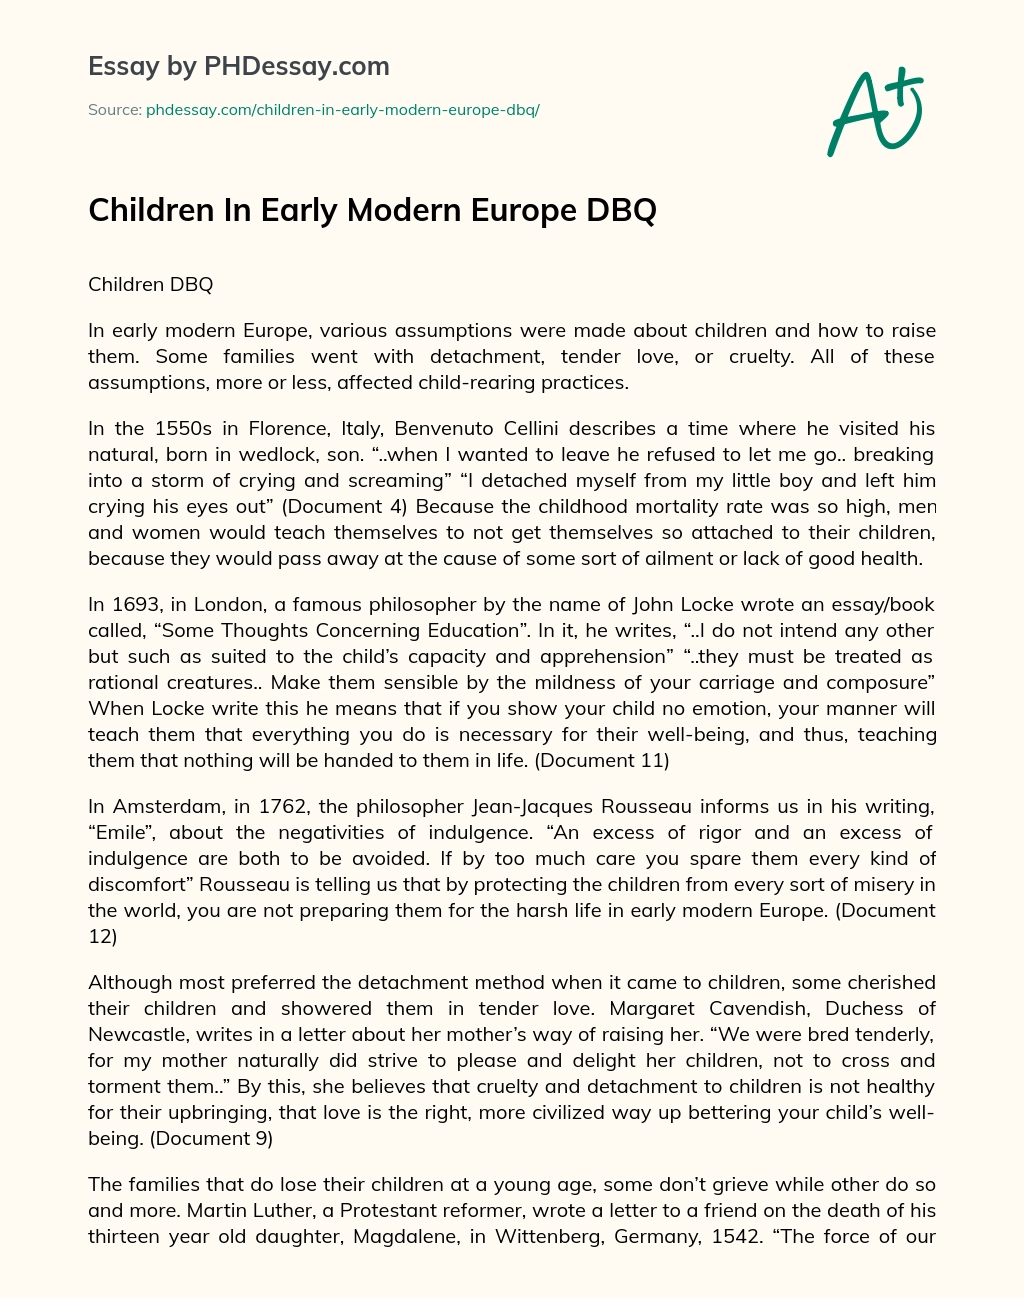 Children In Early Modern Europe DBQ essay